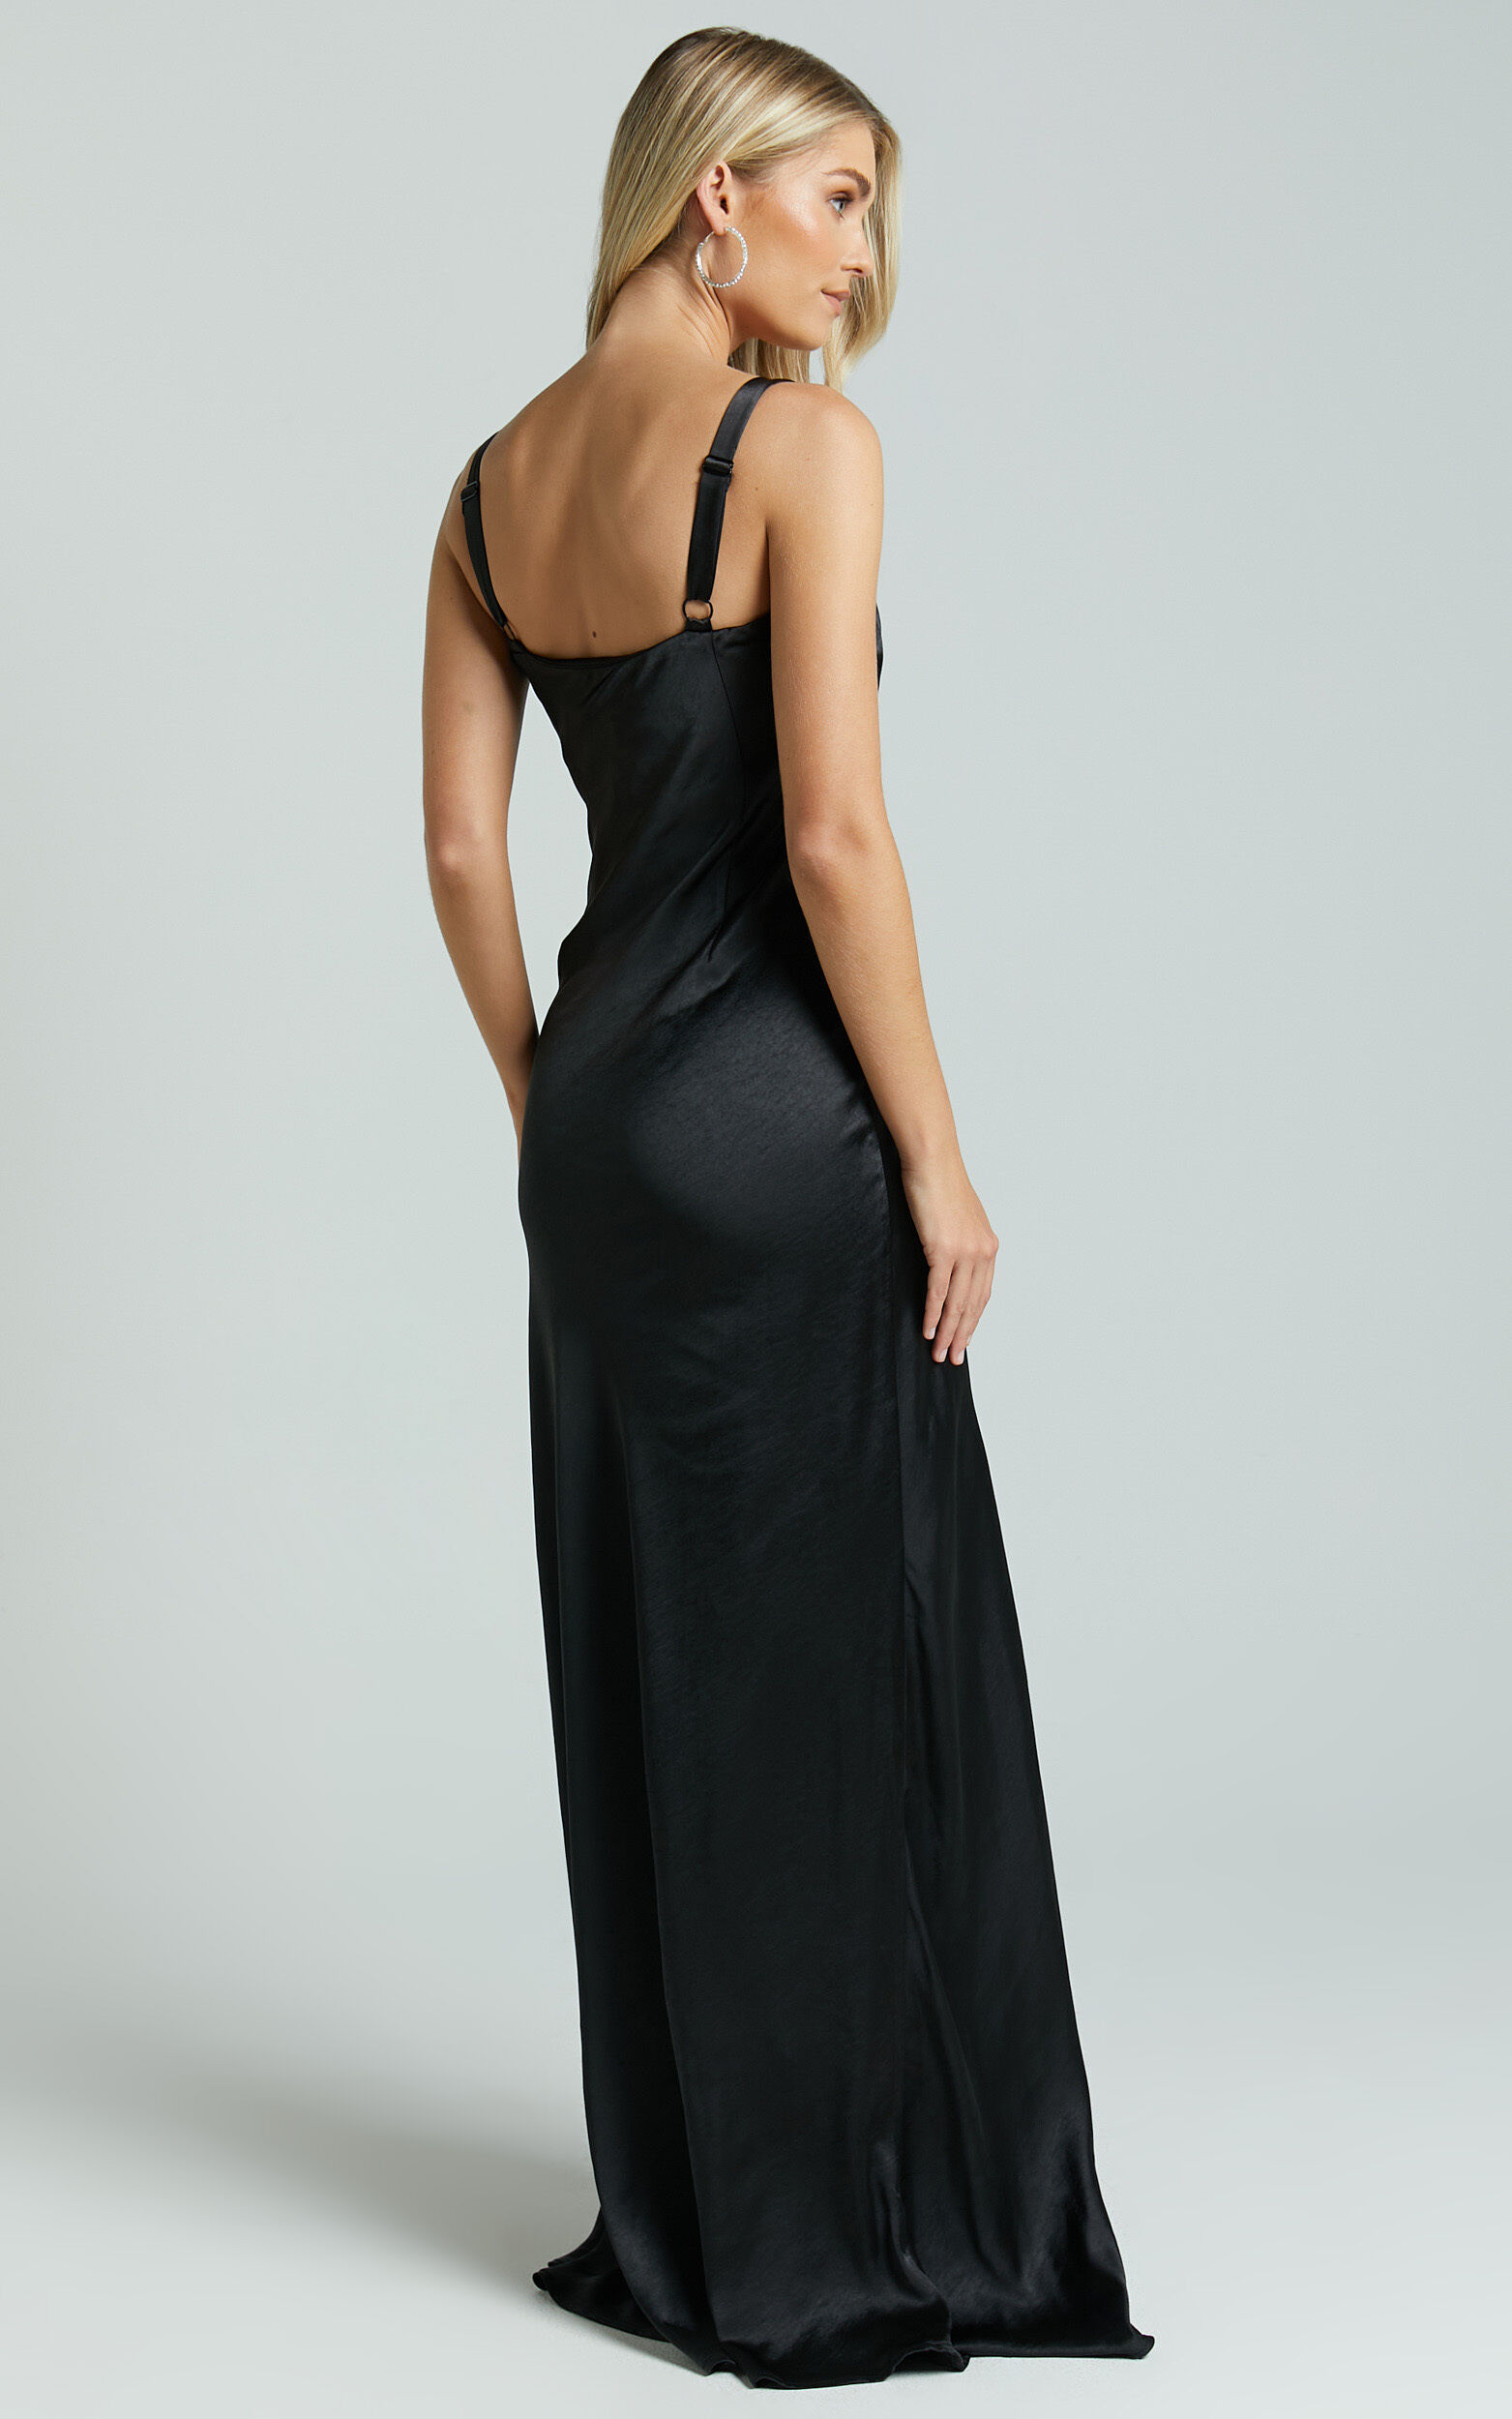 Full Length Slips Dresses, Long Black Slip Dress